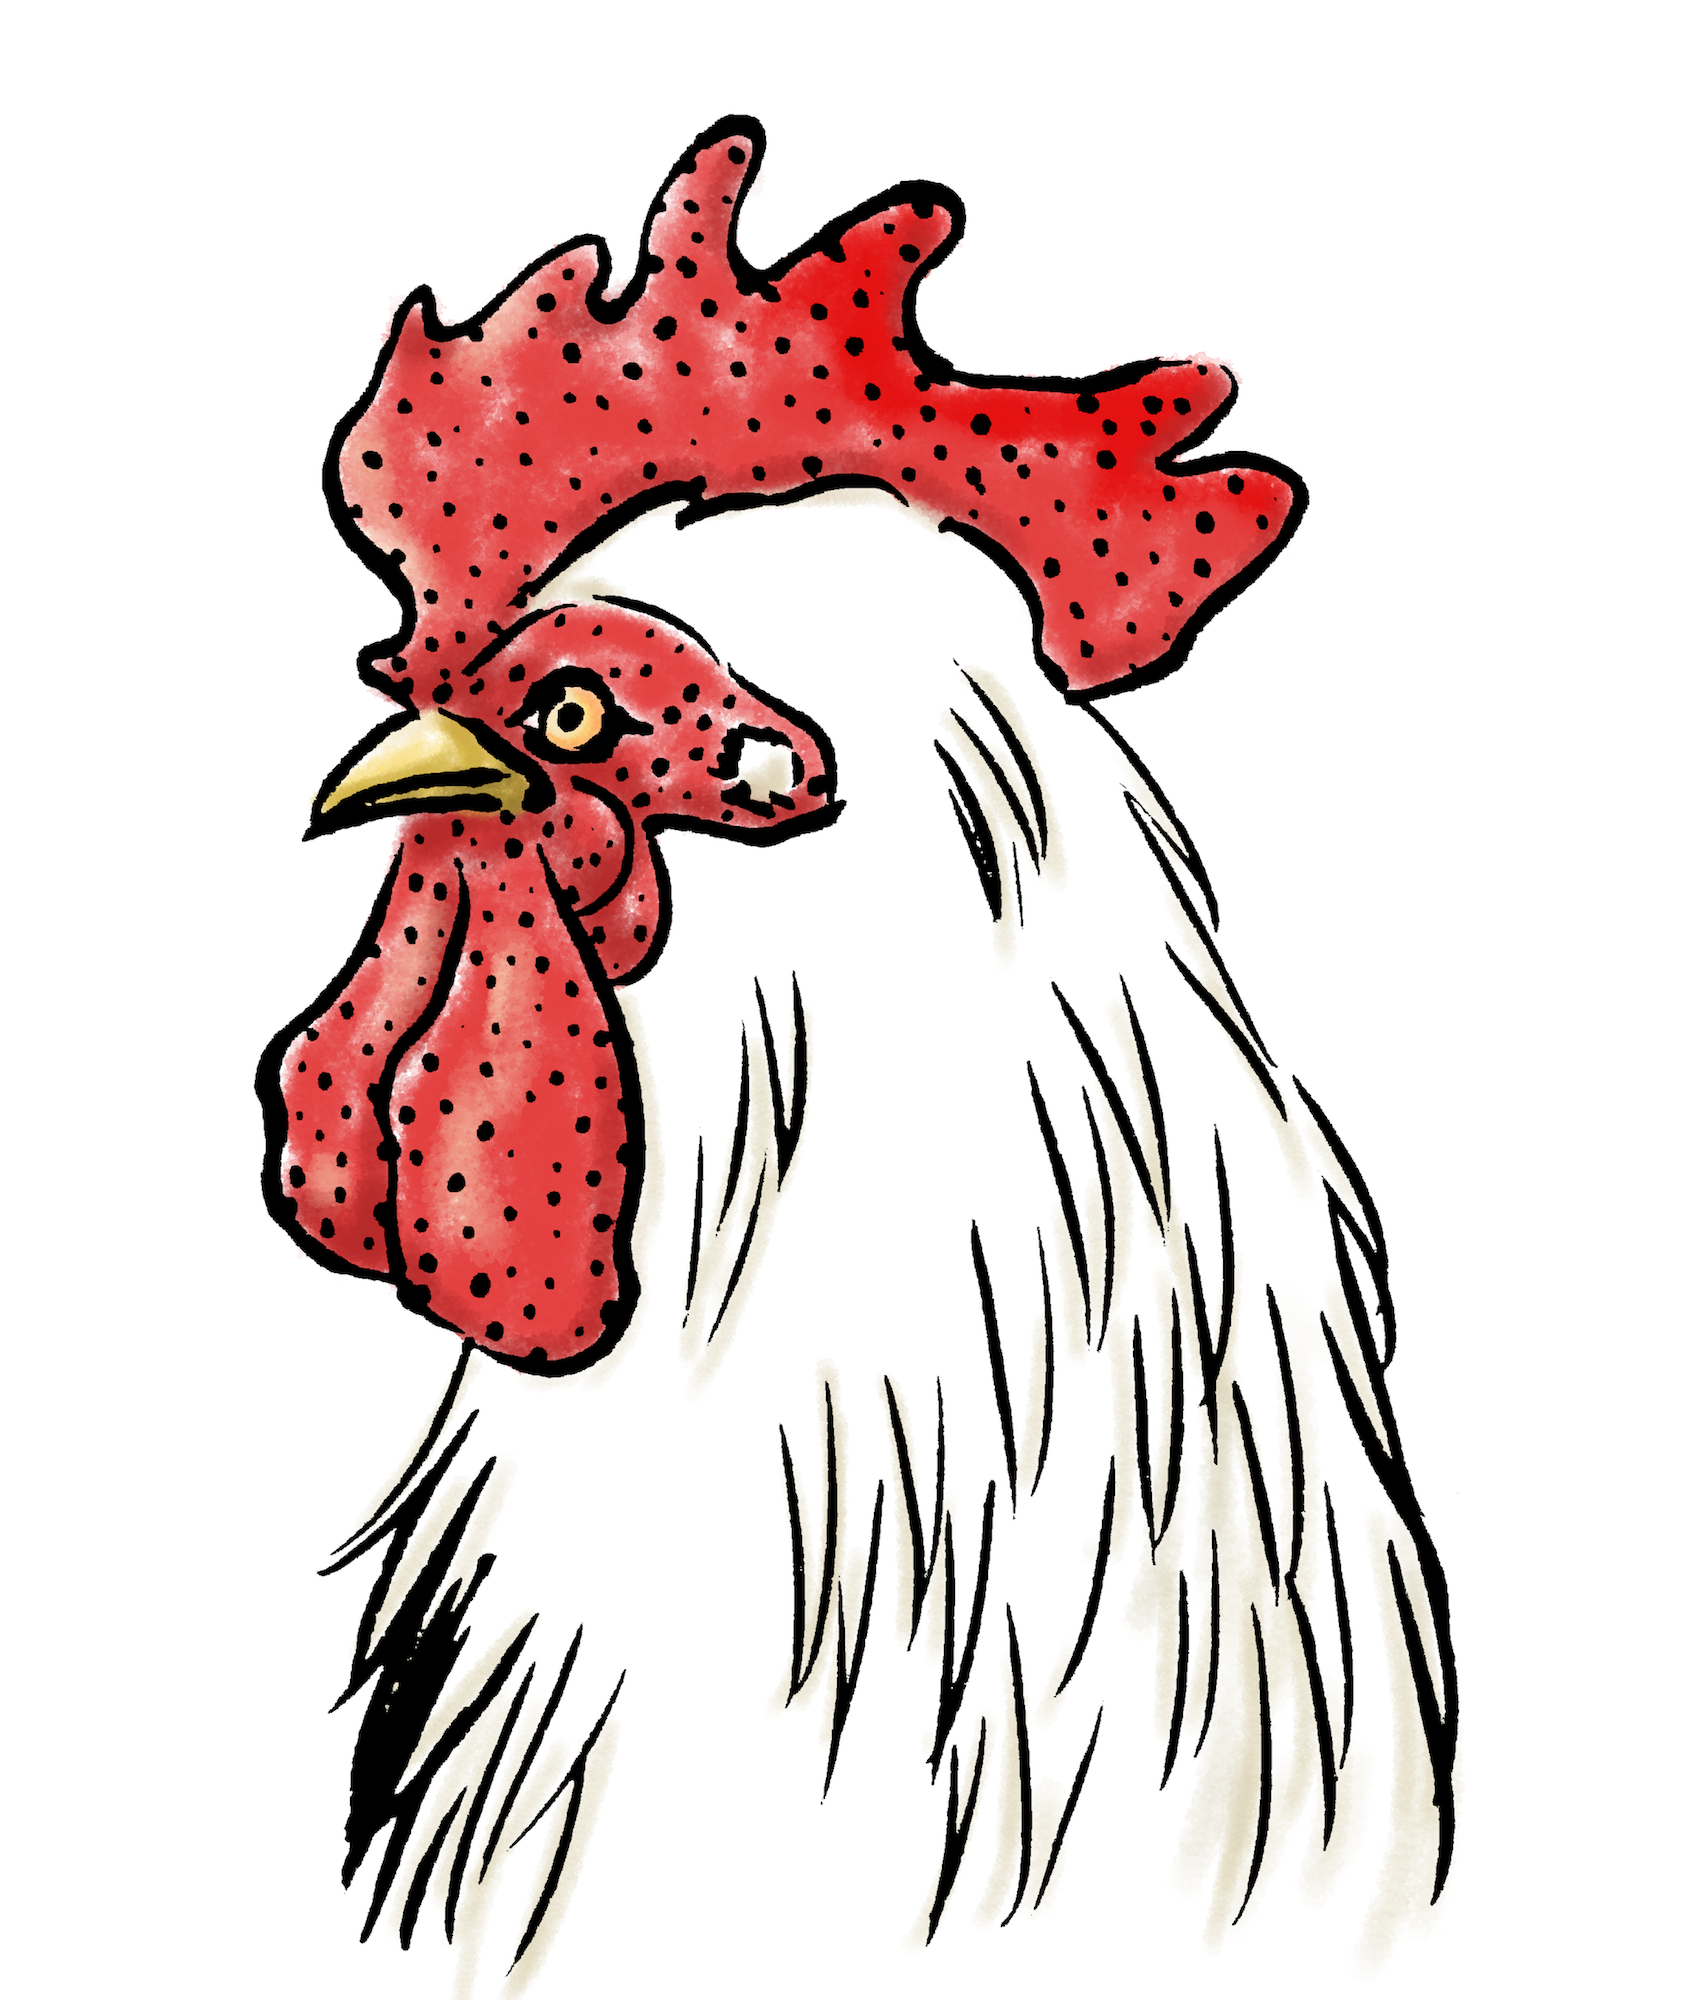 50 素晴らしい鶏 イラスト 正面 リアル スーパーイラストコレクション